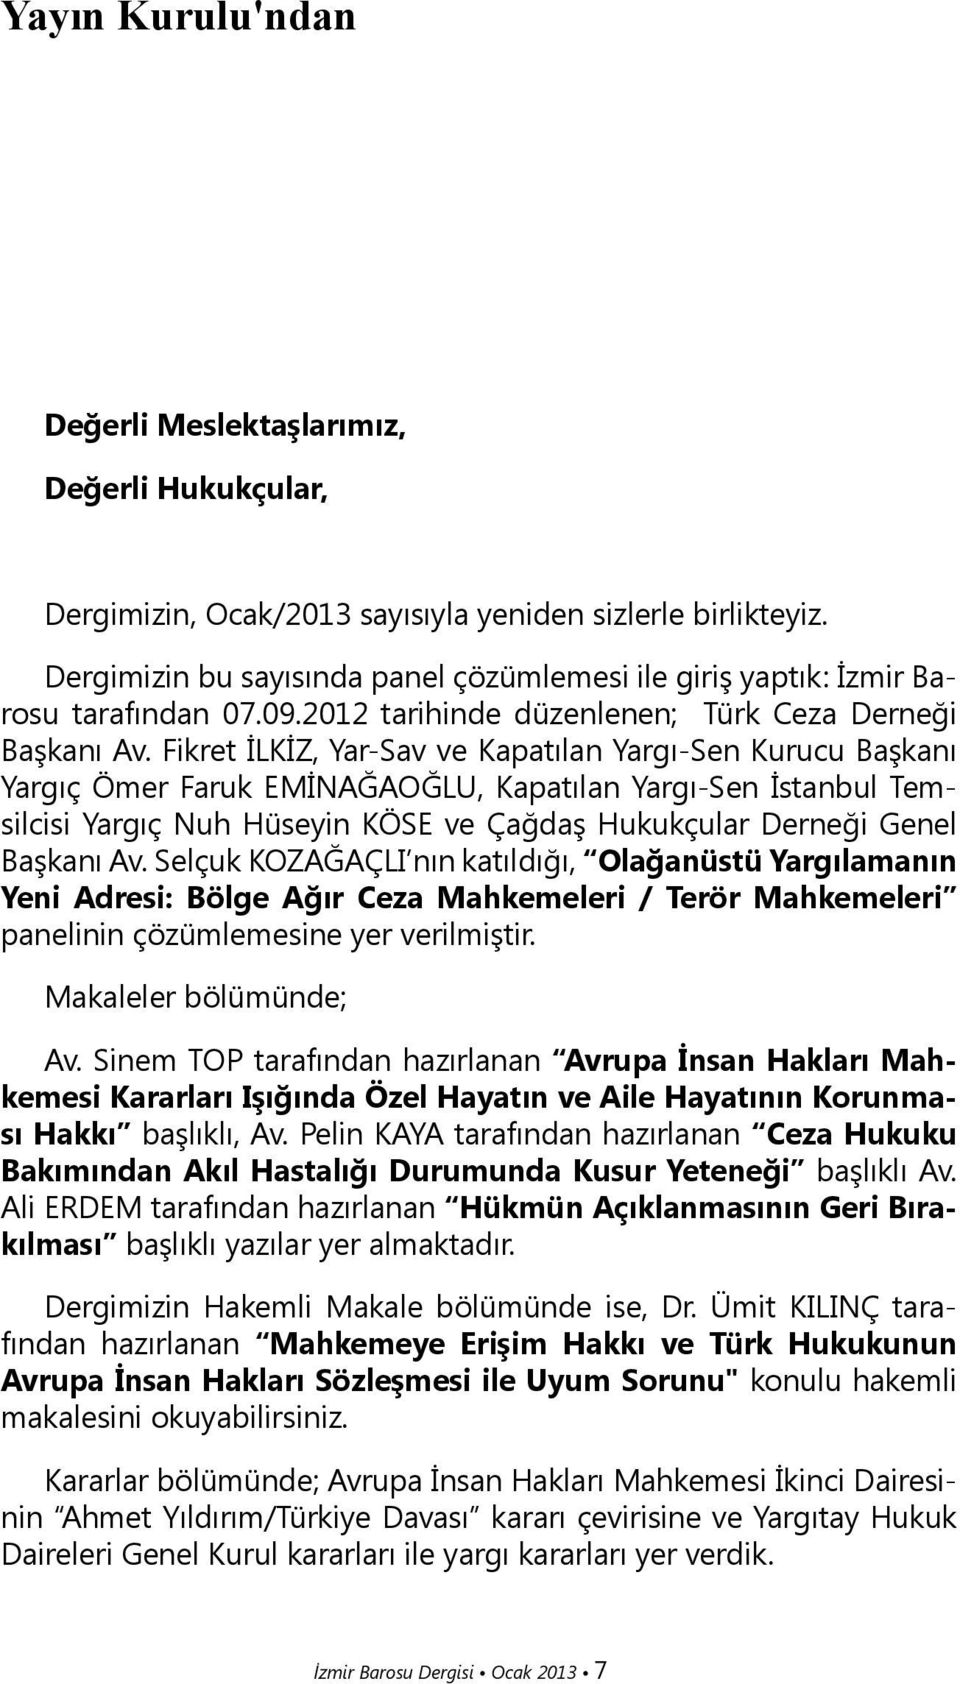 Fikret İLKİZ, Yar-Sav ve Kapatılan Yargı-Sen Kurucu Başkanı Yargıç Ömer Faruk EMİNAĞAOĞLU, Kapatılan Yargı-Sen İstanbul Temsilcisi Yargıç Nuh Hüseyin KÖSE ve Çağdaş Hukukçular Derneği Genel Başkanı